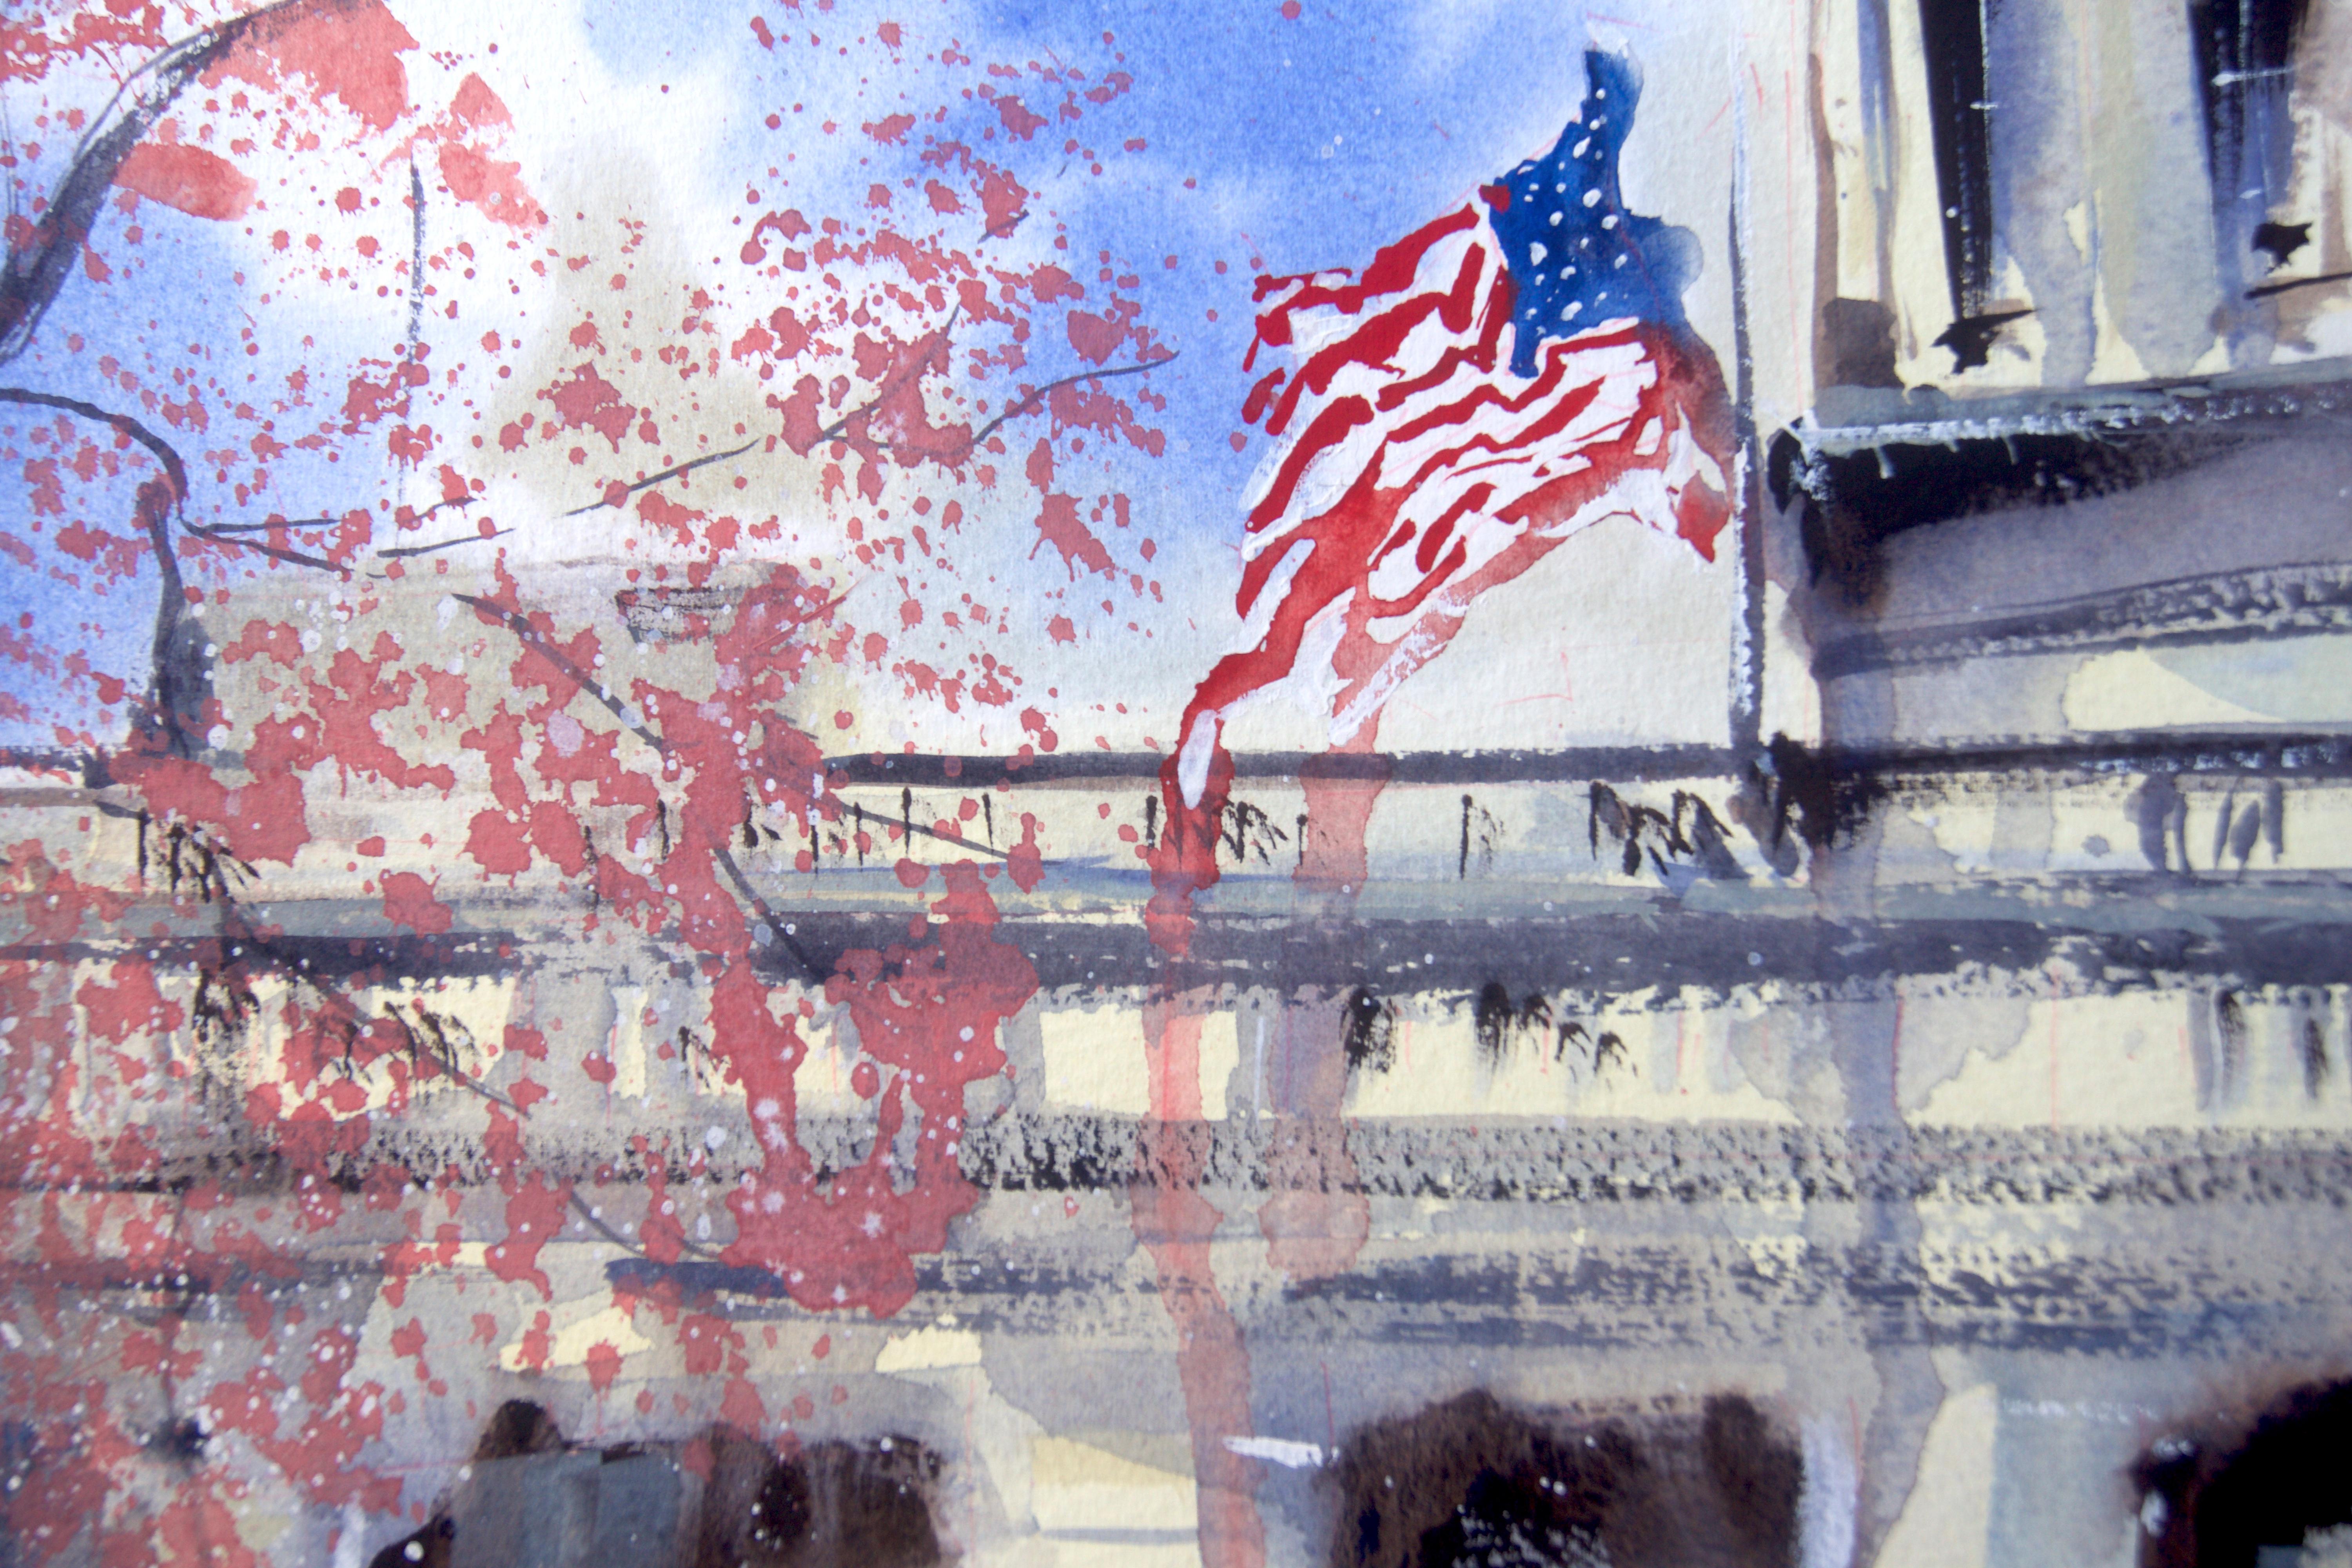 <p>Kommentare des Künstlers<br>Der Künstler James Nyika malt eine Nahaufnahme des US-Kapitols mit all seiner Wärme und seinem Licht. Das beeindruckende architektonische Bauwerk mit seinen ikonischen Bogenfenstern und der allgegenwärtigen